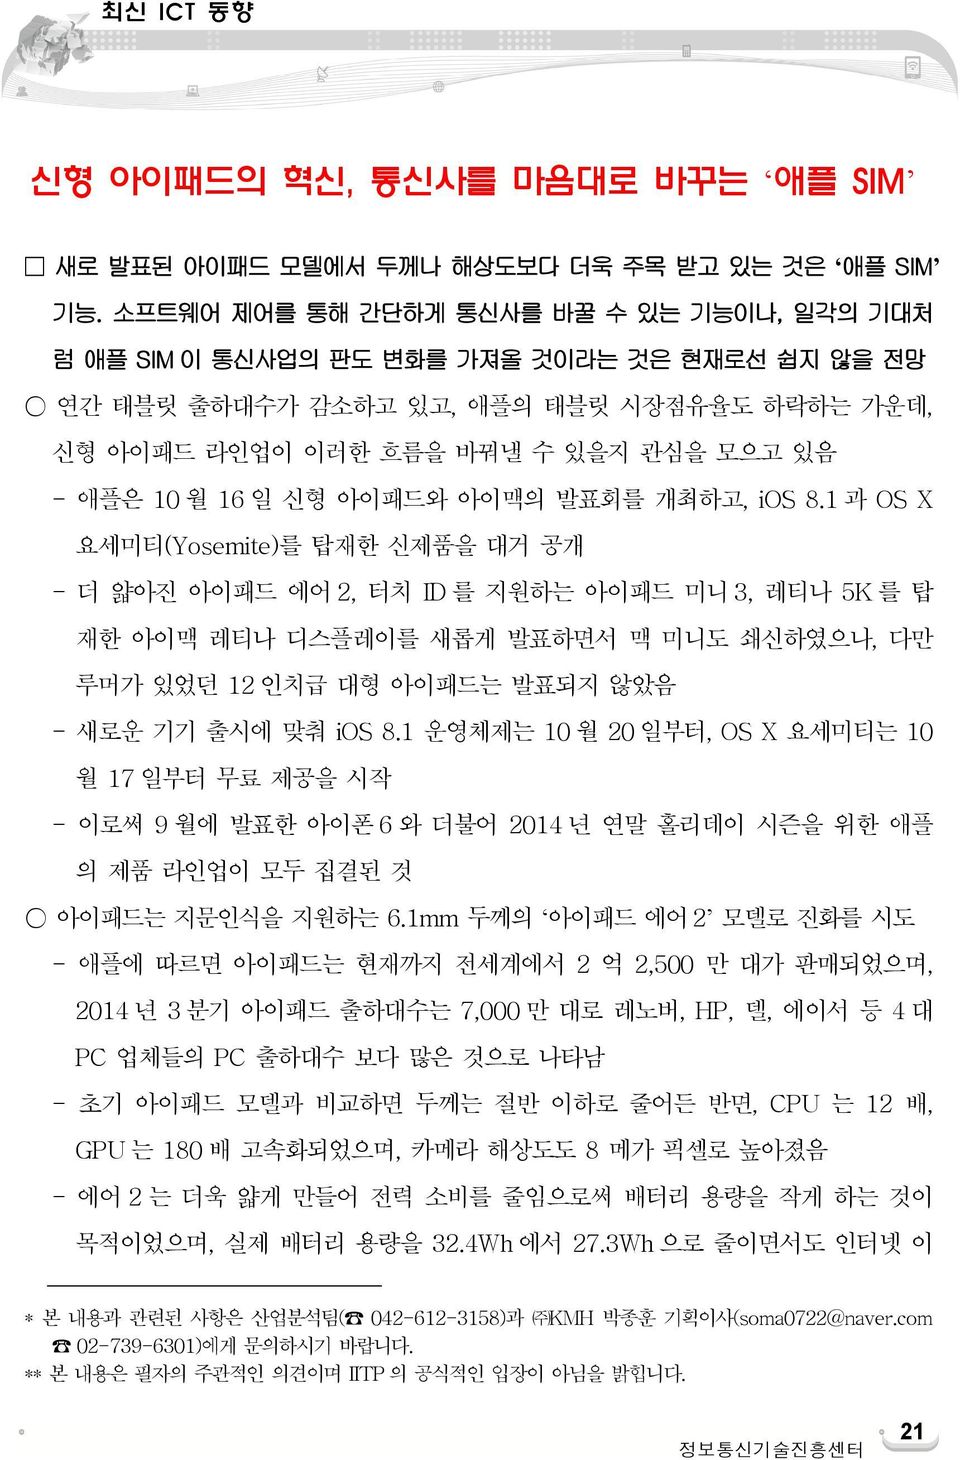 신형 아이패드와 아이맥의 발표회를 개최하고, ios 8.